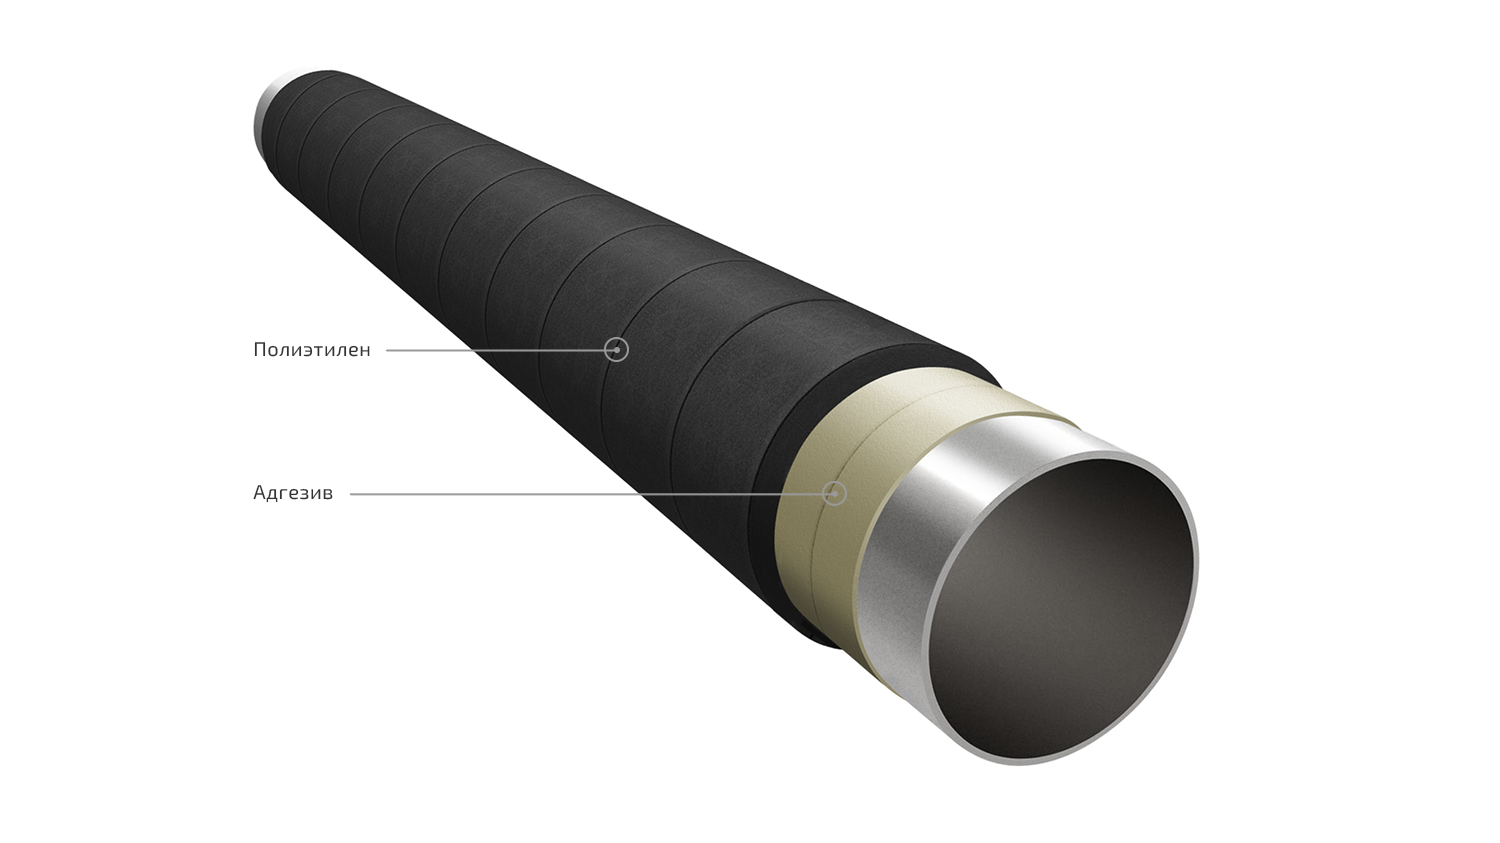 Усиленная изоляция труб гост. ВУС изоляция труб. ВУС-2 изоляция труб. Изоляция наружного трубопровода диаметром 1020мм. Изоляция ВУС трубопроводов.